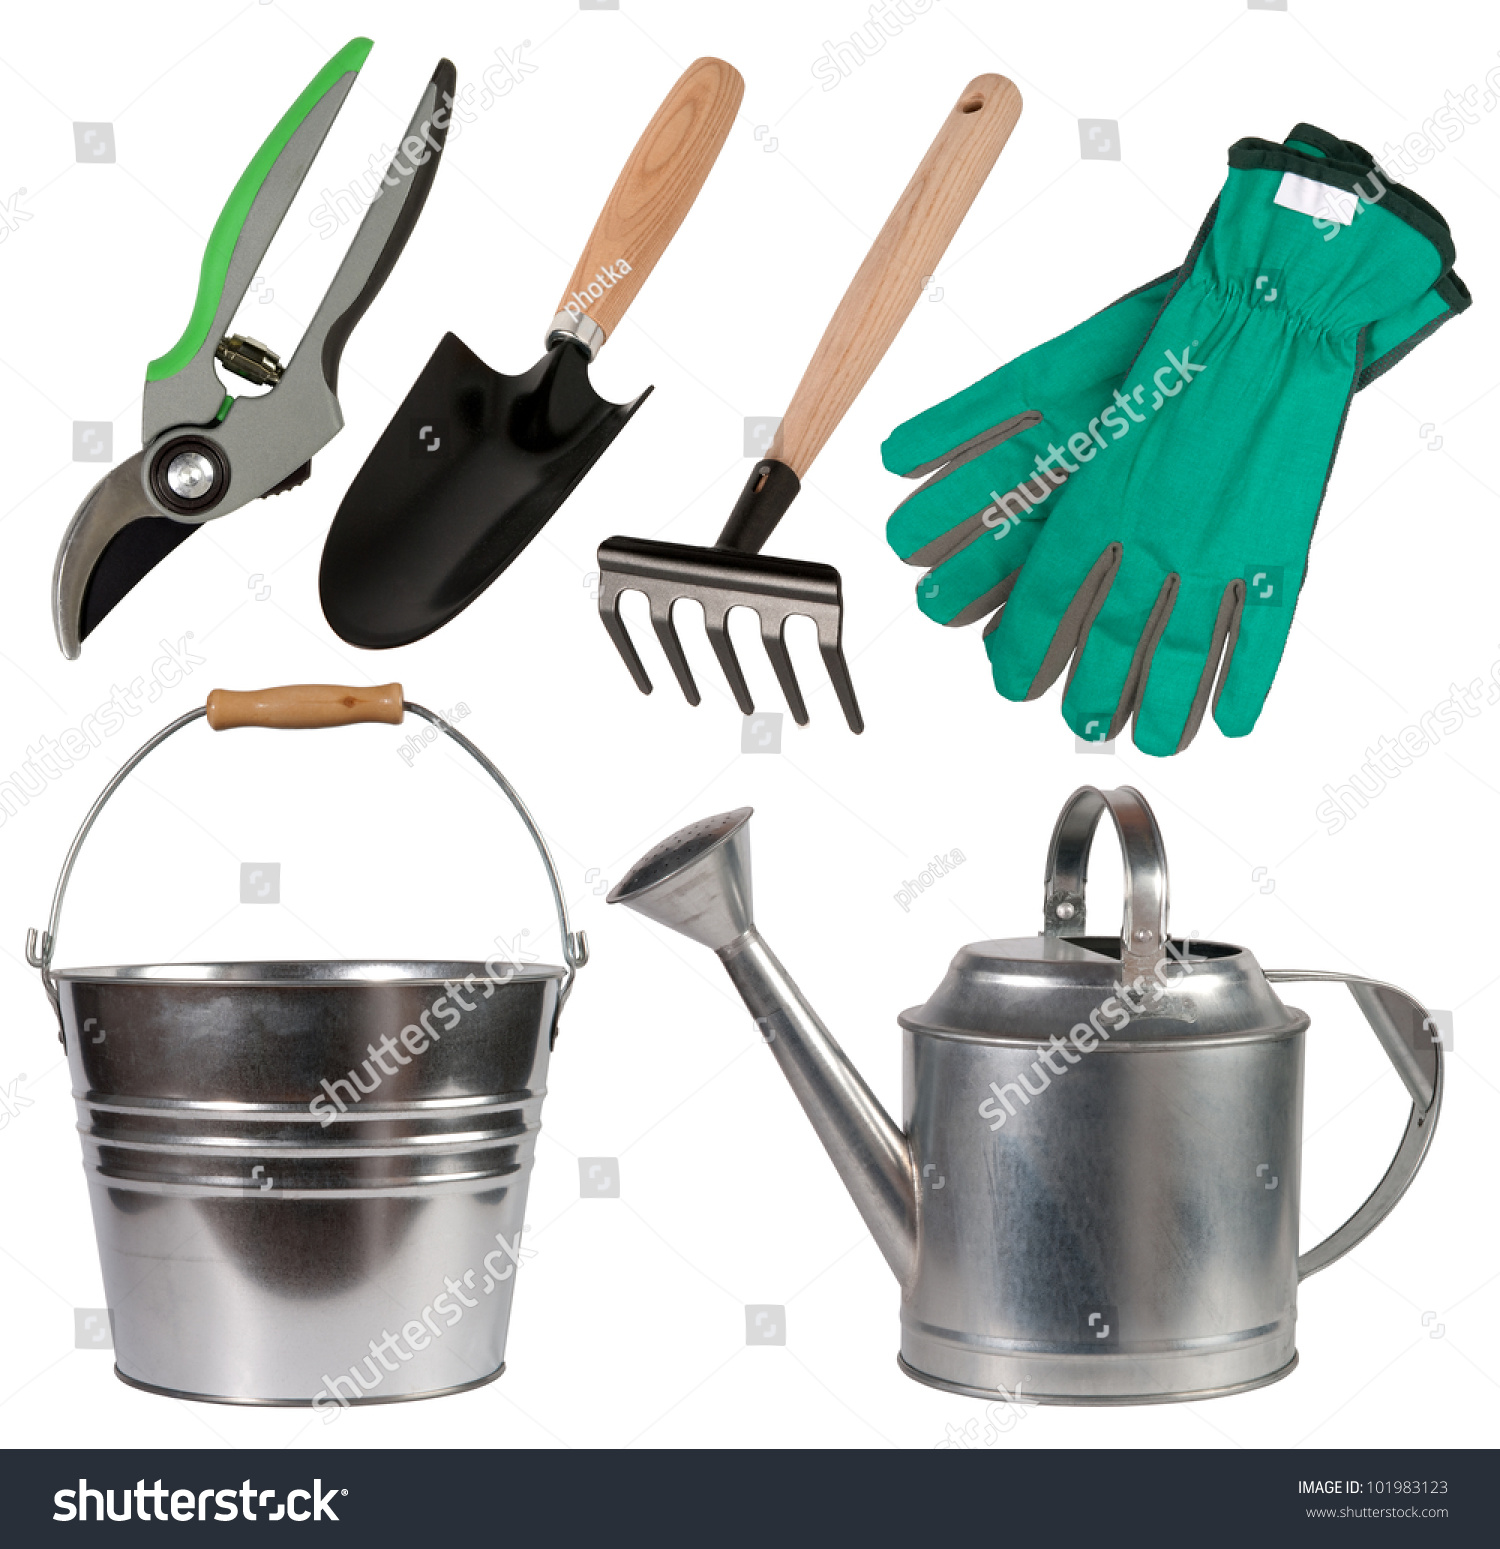 Gardening Tools Isolated On White Background Stock Photo 101983123